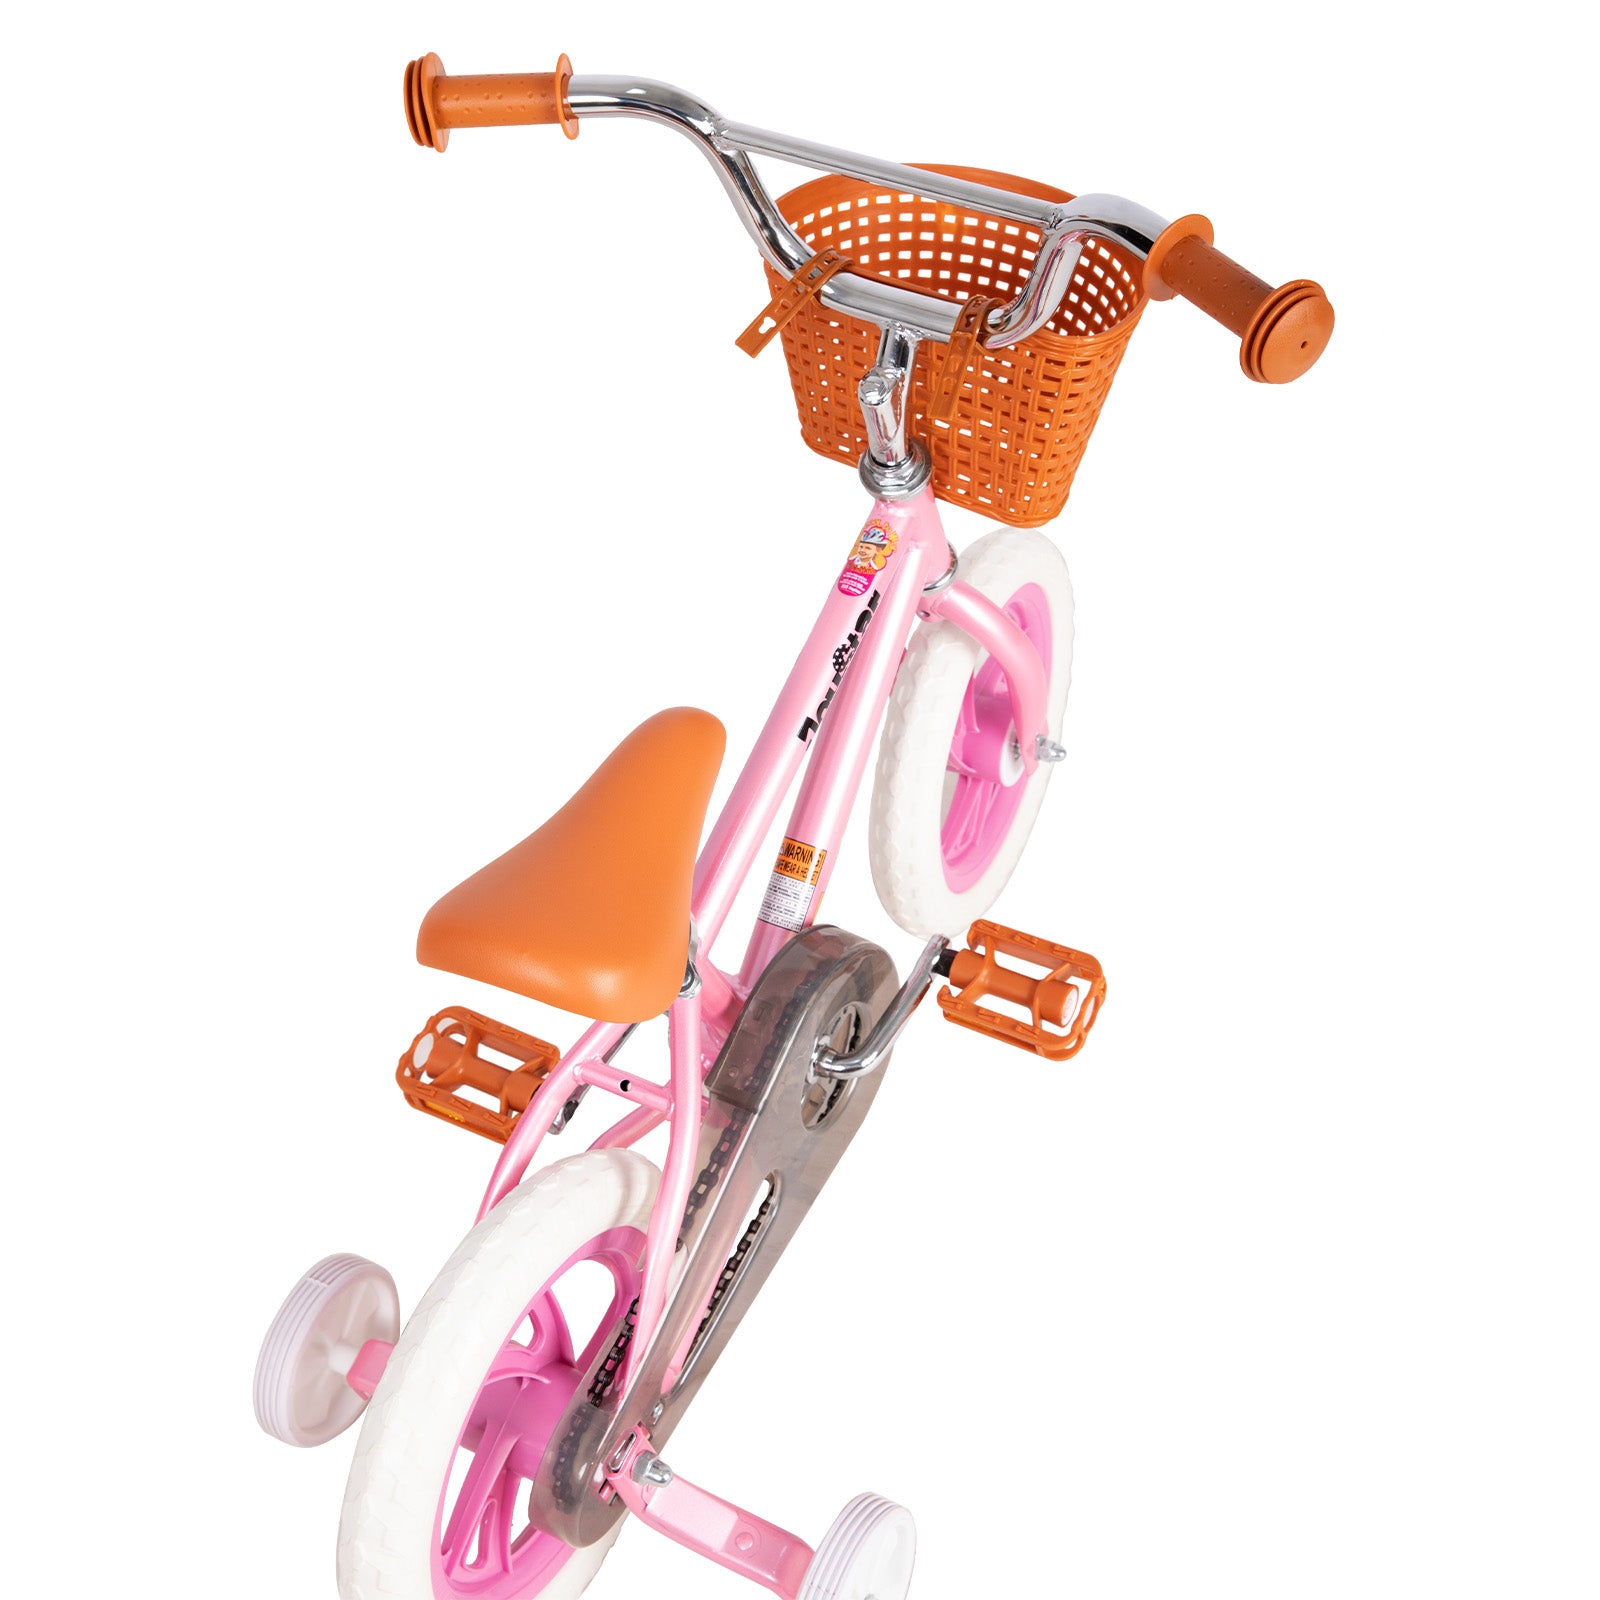 JOYSTAR Starlet Kids Bike for 2-7 yrs Girls & Boys